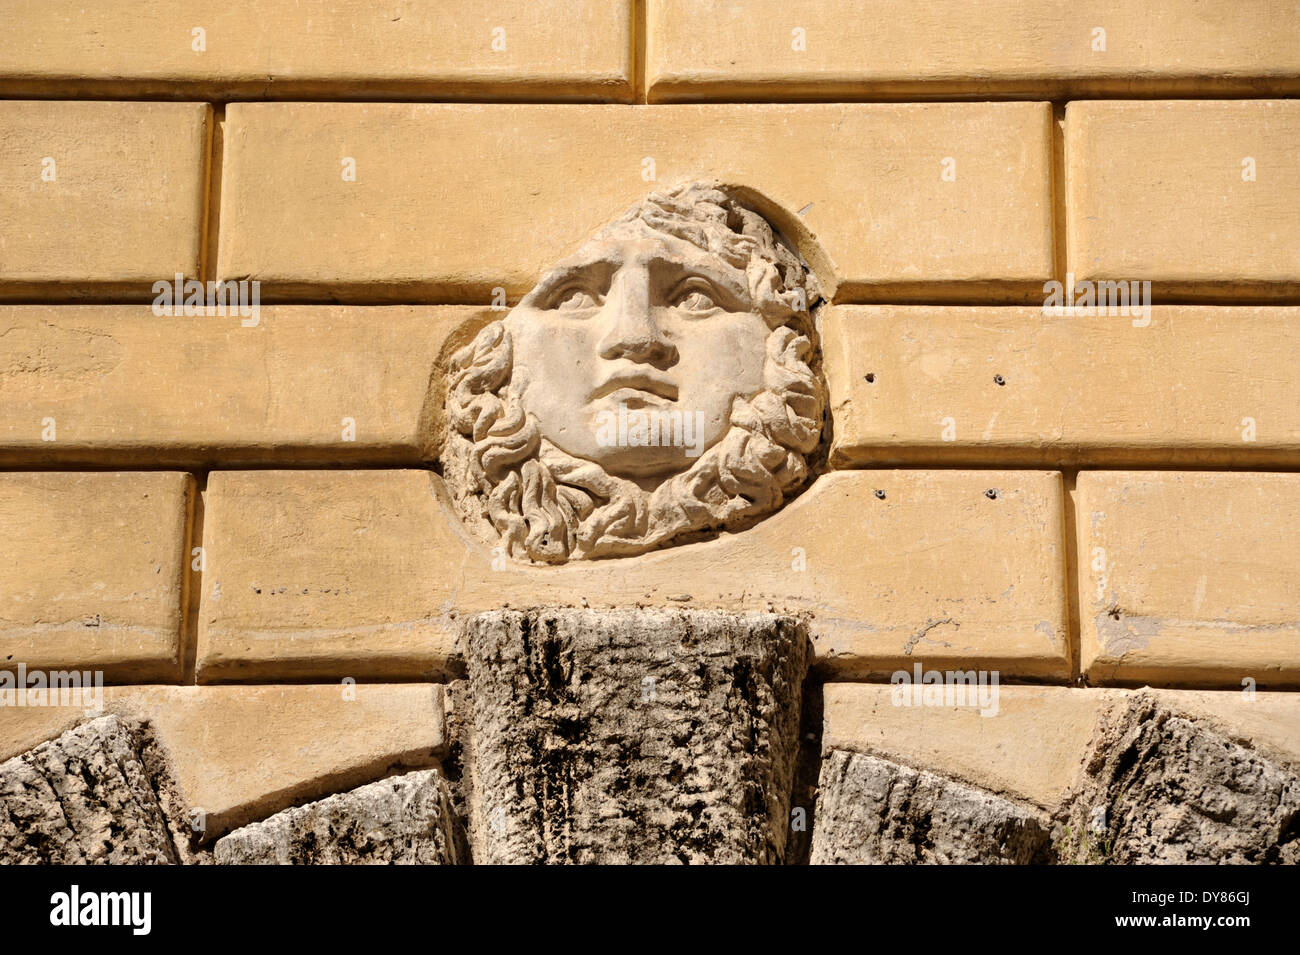 Italie, Rome, Ghetto juif, Palazzo Cenci, Medusa Head, ancien relief romain encastré dans le mur au-dessus de la porte du xvie siècle Banque D'Images